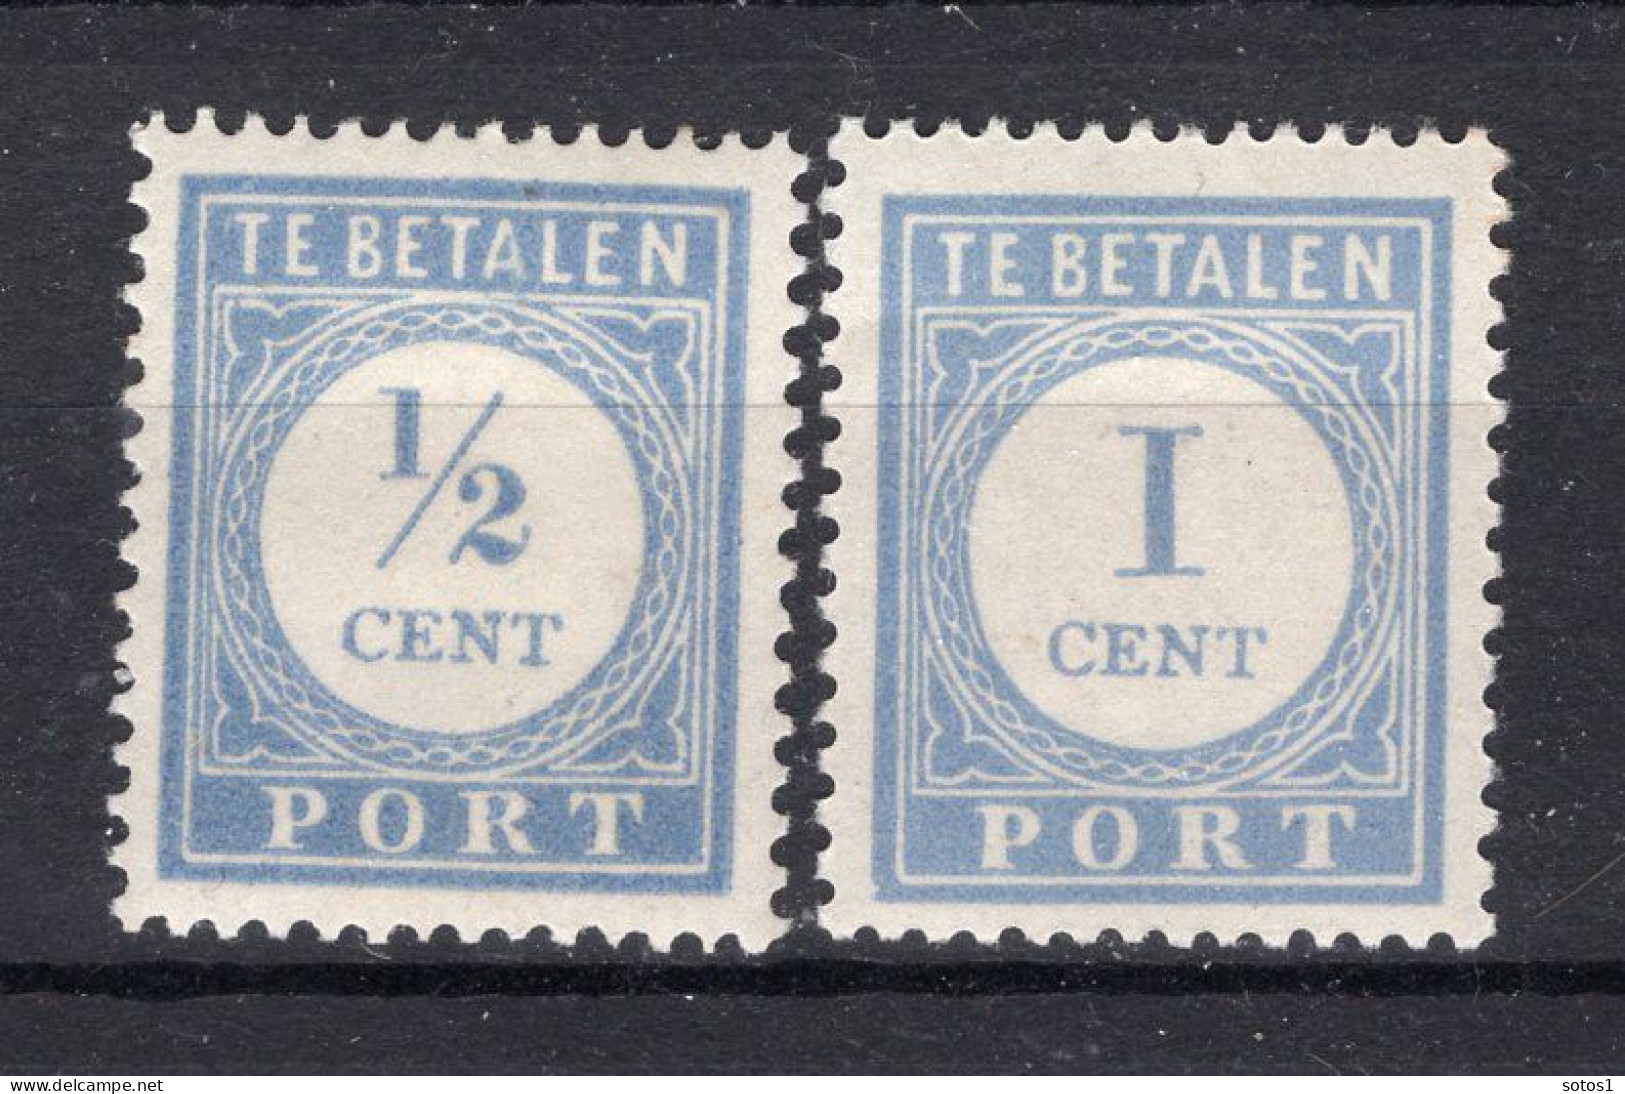 NEDERLAND P44/45 MH 1912-1920 - Cijfer En Waarde In Blauw -1 - Postage Due